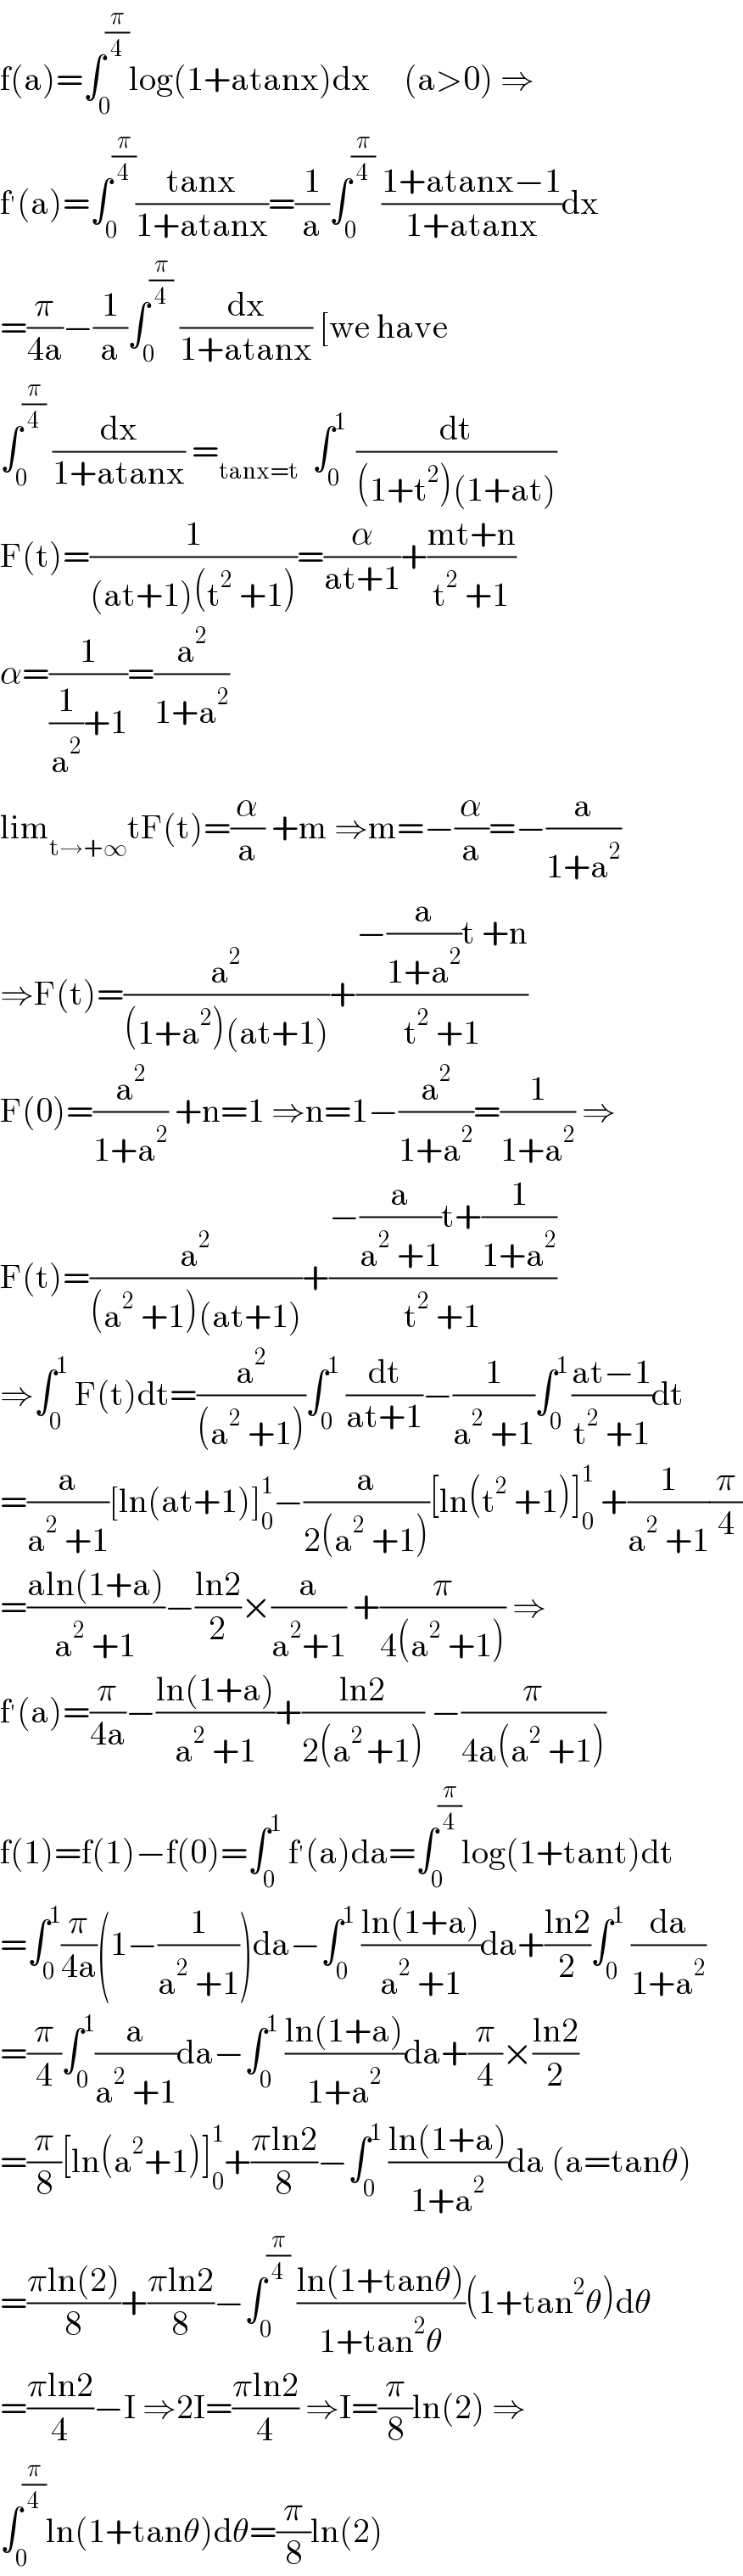 f(a)=∫_0 ^(π/4) log(1+atanx)dx     (a>0) ⇒  f^′ (a)=∫_0 ^(π/4) ((tanx)/(1+atanx))=(1/a)∫_0 ^(π/4)  ((1+atanx−1)/(1+atanx))dx  =(π/(4a))−(1/a)∫_0 ^(π/4)  (dx/(1+atanx)) [we have  ∫_0 ^(π/4)  (dx/(1+atanx)) =_(tanx=t)   ∫_0 ^(1 )  (dt/((1+t^2 )(1+at)))  F(t)=(1/((at+1)(t^2  +1)))=(α/(at+1))+((mt+n)/(t^2  +1))  α=(1/((1/a^2 )+1))=(a^2 /(1+a^2 ))  lim_(t→+∞) tF(t)=(α/a) +m ⇒m=−(α/a)=−(a/(1+a^2 ))  ⇒F(t)=(a^2 /((1+a^2 )(at+1)))+((−(a/(1+a^2 ))t +n)/(t^2  +1))  F(0)=(a^2 /(1+a^2 )) +n=1 ⇒n=1−(a^2 /(1+a^2 ))=(1/(1+a^2 )) ⇒  F(t)=(a^2 /((a^2  +1)(at+1)))+((−(a/(a^2  +1))t+(1/(1+a^2 )))/(t^2  +1))  ⇒∫_0 ^1  F(t)dt=(a^2 /((a^2  +1)))∫_0 ^1  (dt/(at+1))−(1/(a^2  +1))∫_0 ^(1 ) ((at−1)/(t^2  +1))dt  =(a/(a^2  +1))[ln(at+1)]_0 ^1 −(a/(2(a^2  +1)))[ln(t^2  +1)]_0 ^1  +(1/(a^2  +1))(π/4)  =((aln(1+a))/(a^2  +1))−((ln2)/2)×(a/(a^2 +1)) +(π/(4(a^2  +1))) ⇒  f^′ (a)=(π/(4a))−((ln(1+a))/(a^2  +1))+((ln2)/(2(a^(2 ) +1))) −(π/(4a(a^2  +1)))  f(1)=f(1)−f(0)=∫_0 ^1  f^′ (a)da=∫_0 ^(π/4) log(1+tant)dt  =∫_0 ^1 (π/(4a))(1−(1/(a^2  +1)))da−∫_0 ^1  ((ln(1+a))/(a^2  +1))da+((ln2)/2)∫_0 ^1  (da/(1+a^2 ))  =(π/4)∫_0 ^1 (a/(a^2  +1))da−∫_0 ^1  ((ln(1+a))/(1+a^2 ))da+(π/4)×((ln2)/2)  =(π/8)[ln(a^2 +1)]_0 ^1 +((πln2)/8)−∫_0 ^1  ((ln(1+a))/(1+a^2 ))da (a=tanθ)  =((πln(2))/8)+((πln2)/8)−∫_0 ^(π/4)  ((ln(1+tanθ))/(1+tan^2 θ))(1+tan^2 θ)dθ  =((πln2)/4)−I ⇒2I=((πln2)/4) ⇒I=(π/8)ln(2) ⇒  ∫_0 ^(π/4) ln(1+tanθ)dθ=(π/8)ln(2)  